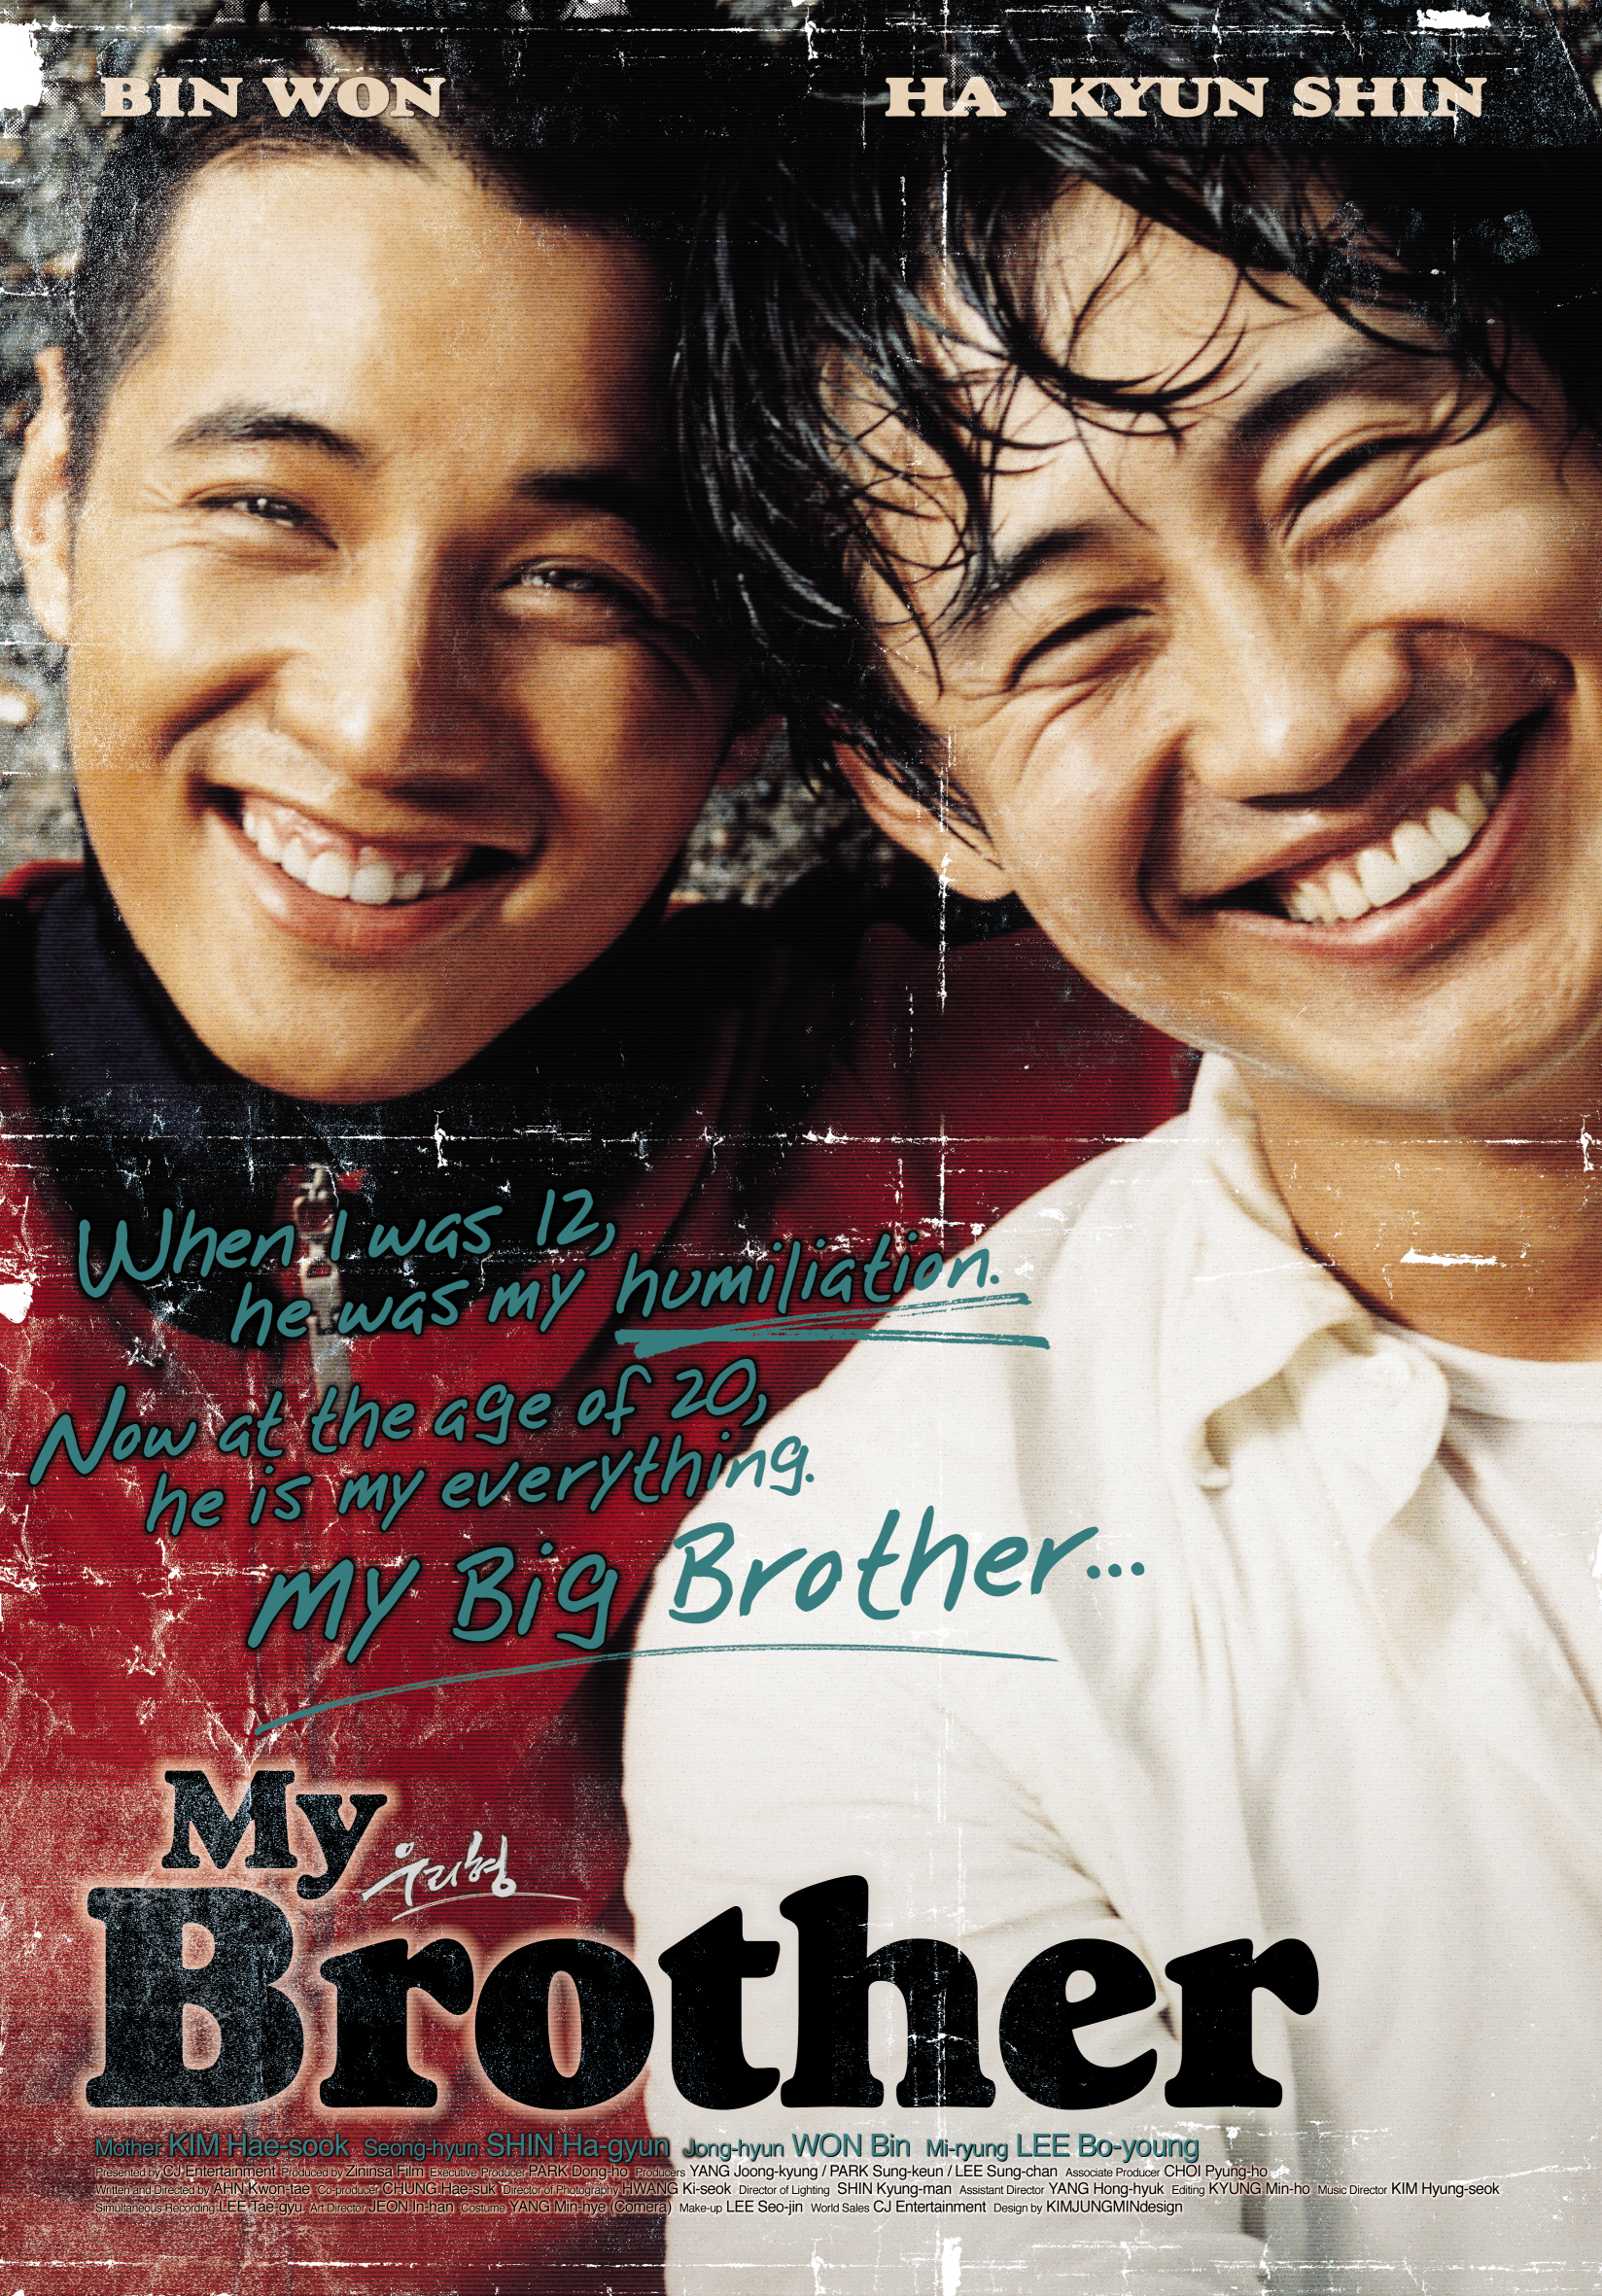 Ha-kyun Shin and Bin Won in Uri hyeong (2004)